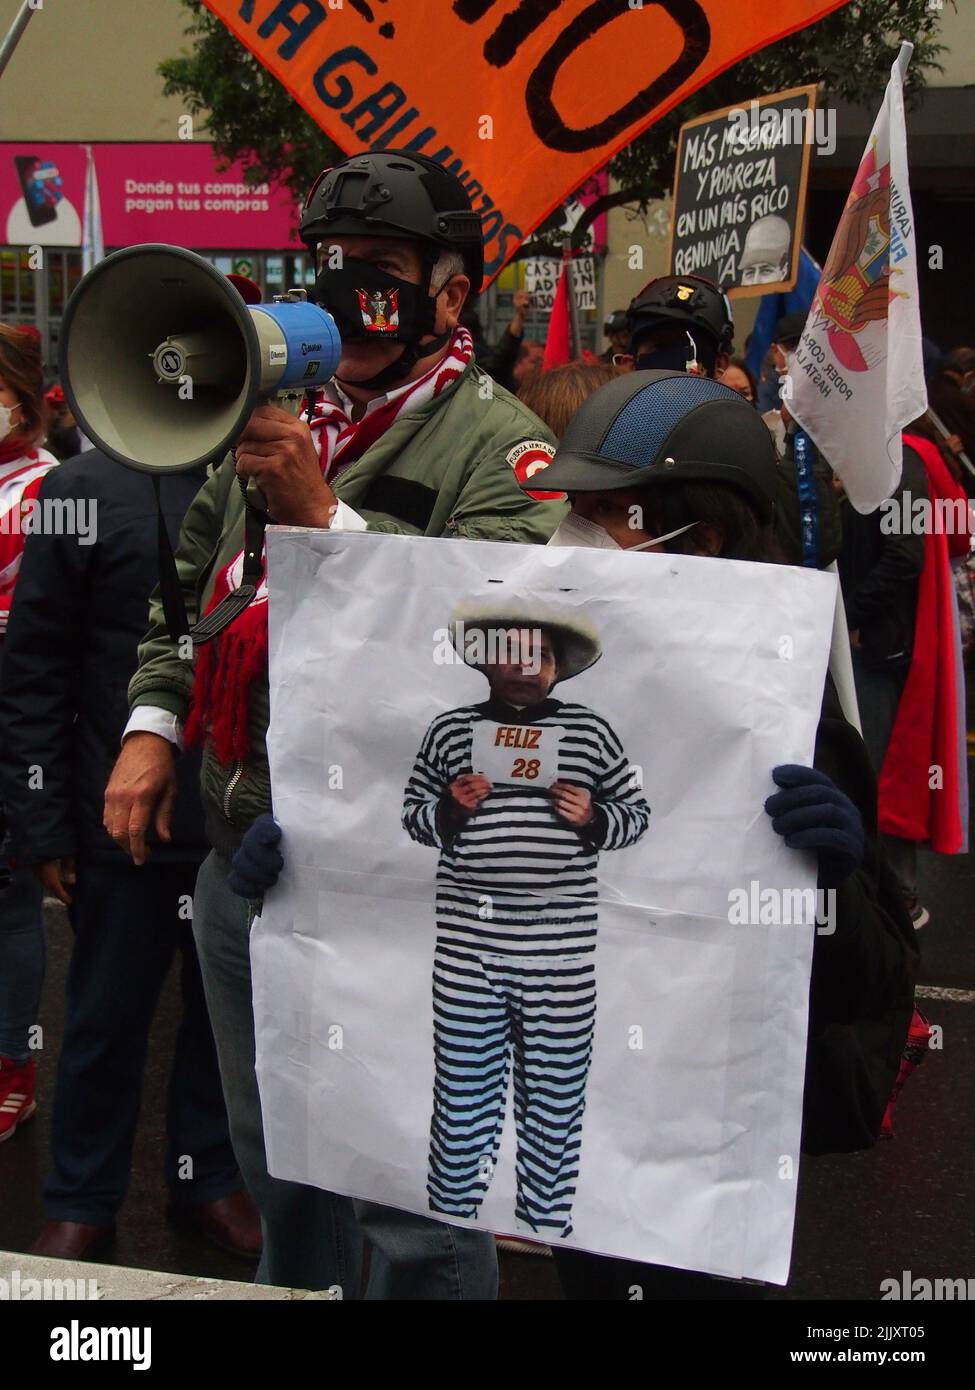 Una caricatura del Presidente Pedro Castillo se muestra cuando en el día de la independencia de Perú, cientos de personas se reúnen en las calles para protestar contra el Presidente Pedro Castillo, acusado de varios actos de corrupción después del primer año de su gobierno. Foto de stock